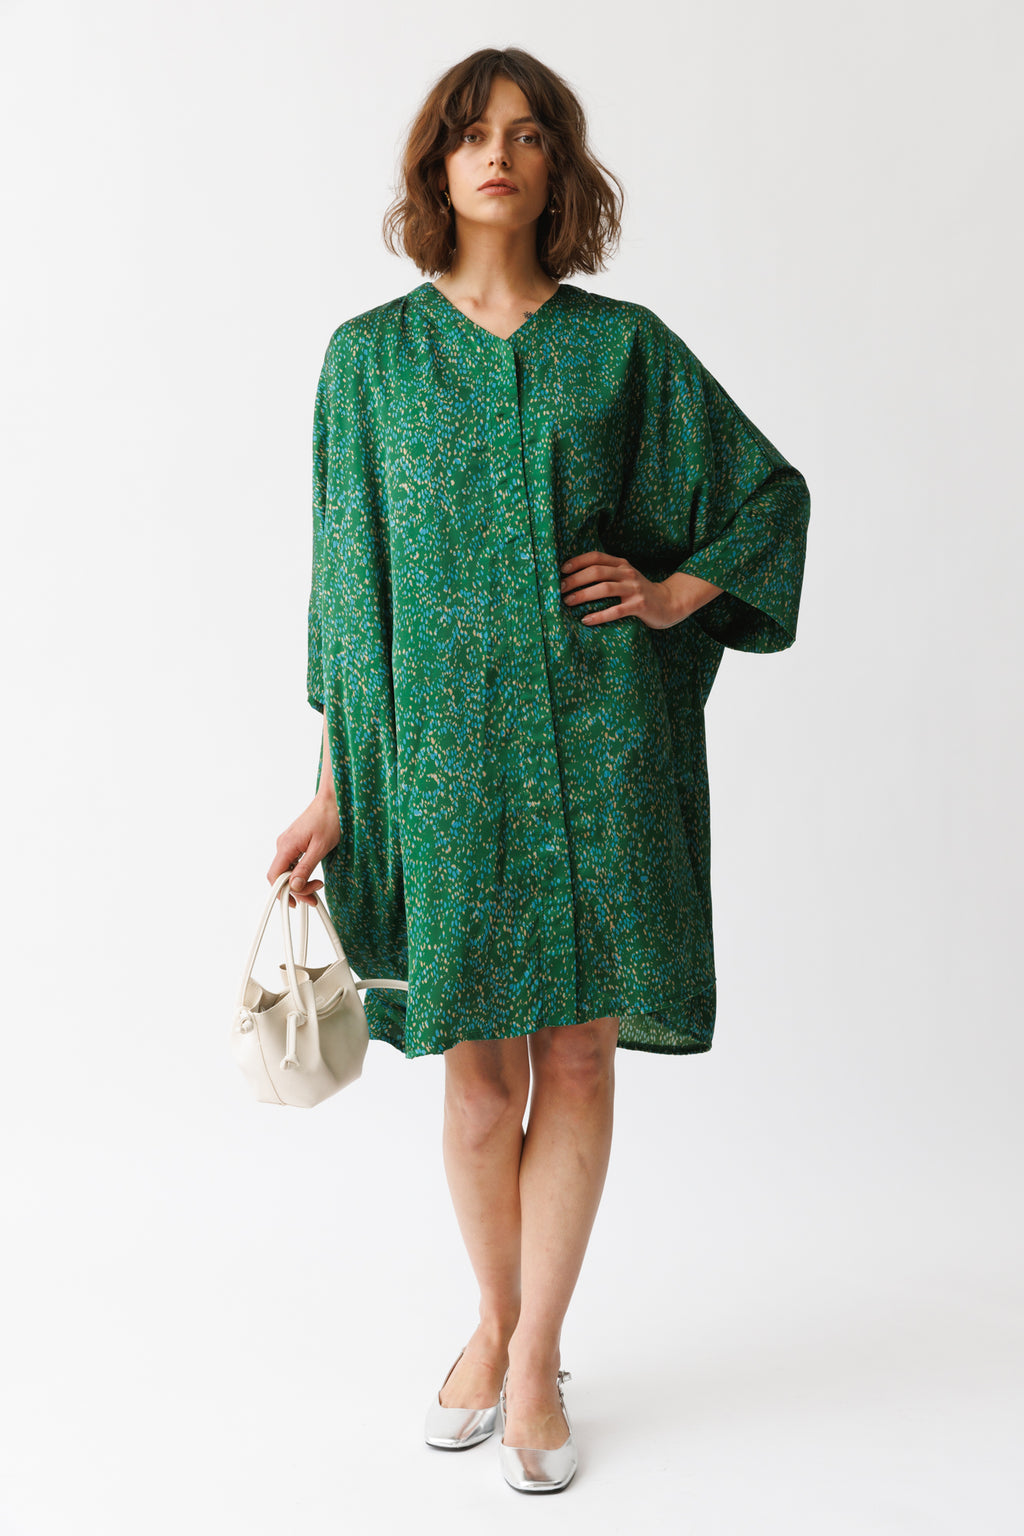 שמלת היקארו הדפס ירוק